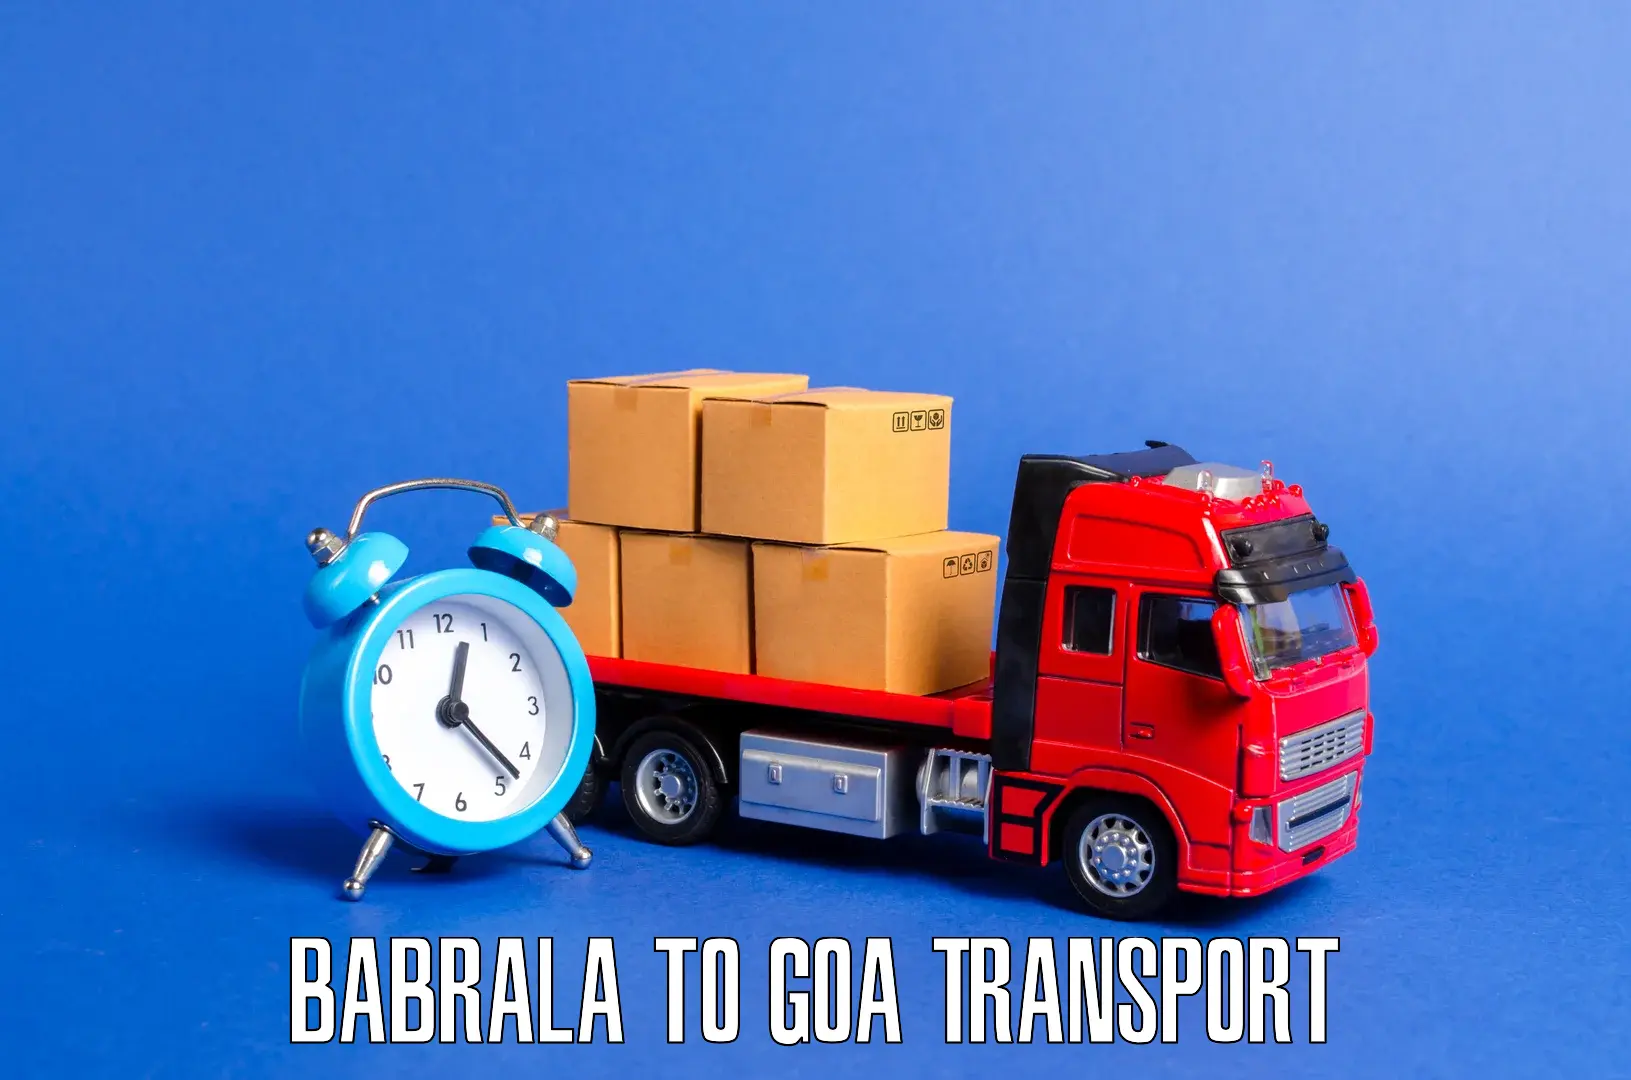 Express transport services Babrala to Panjim